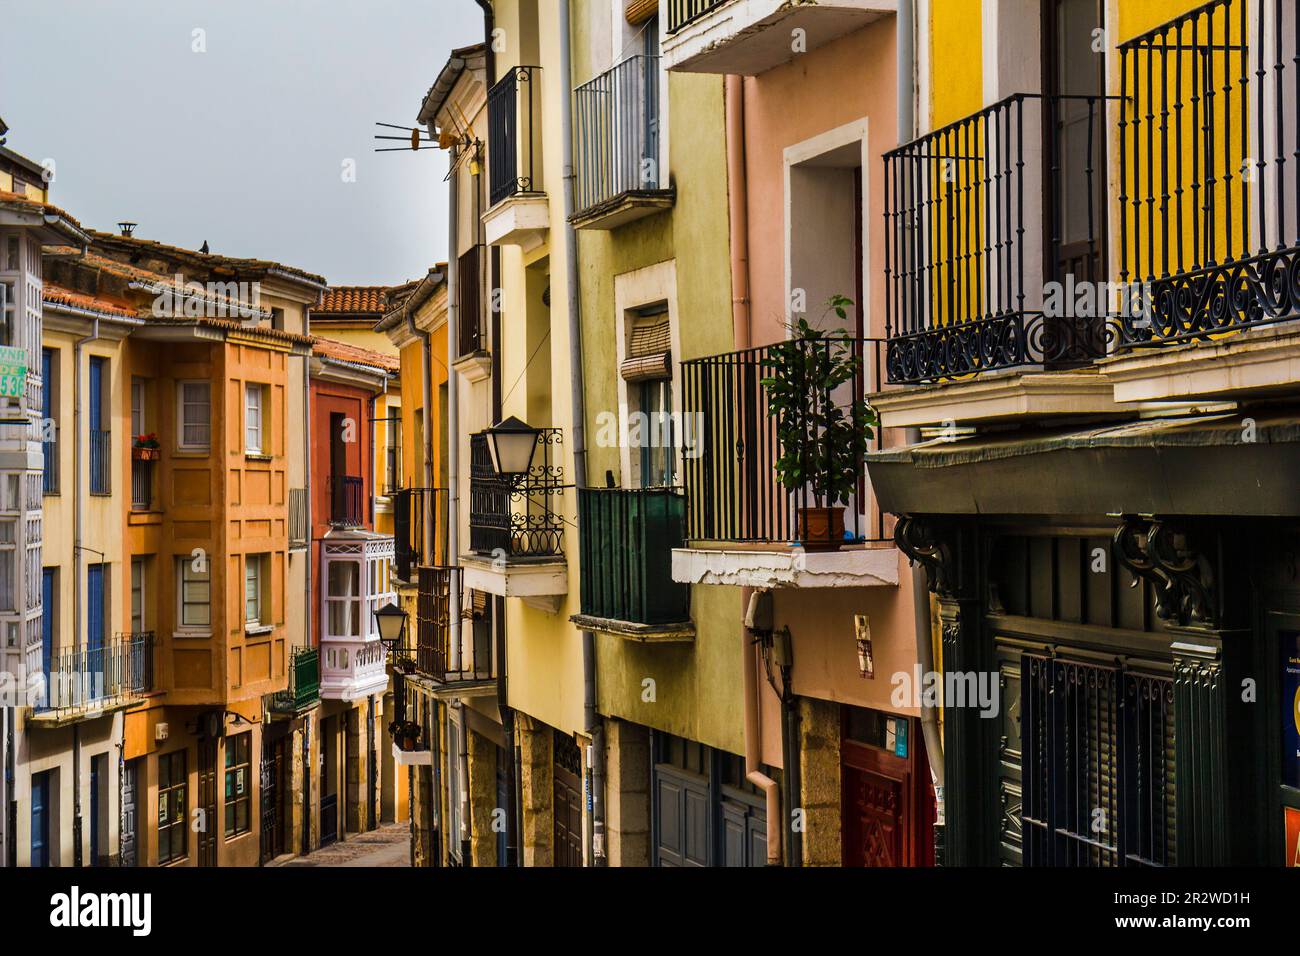 Calle de Balborraz, Zamora, Spain Stock Photo